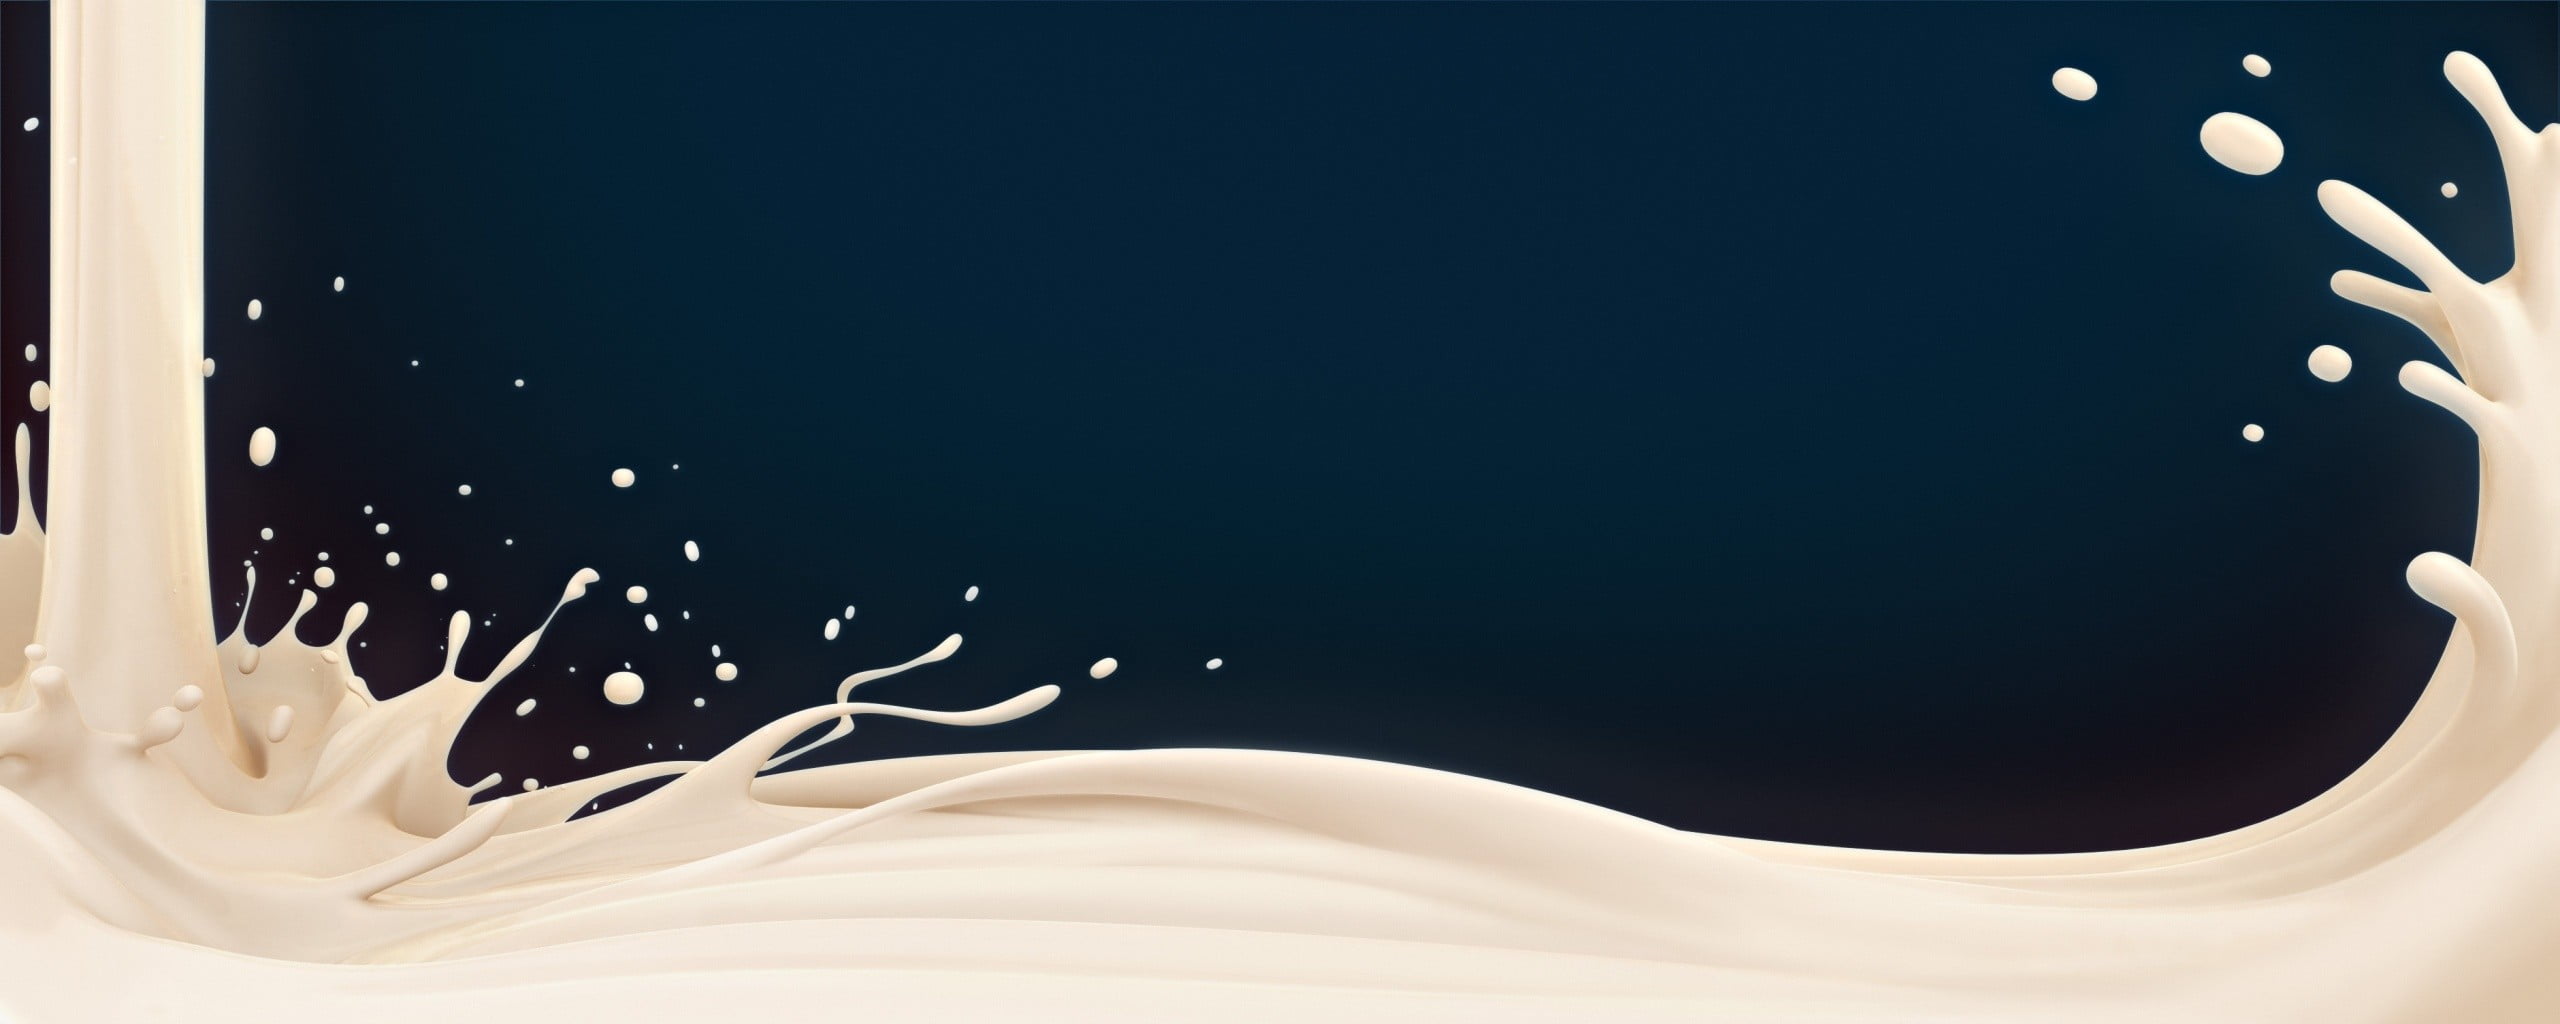 Milk illustration, liquid HD wallpaper | Wallpaper Flare